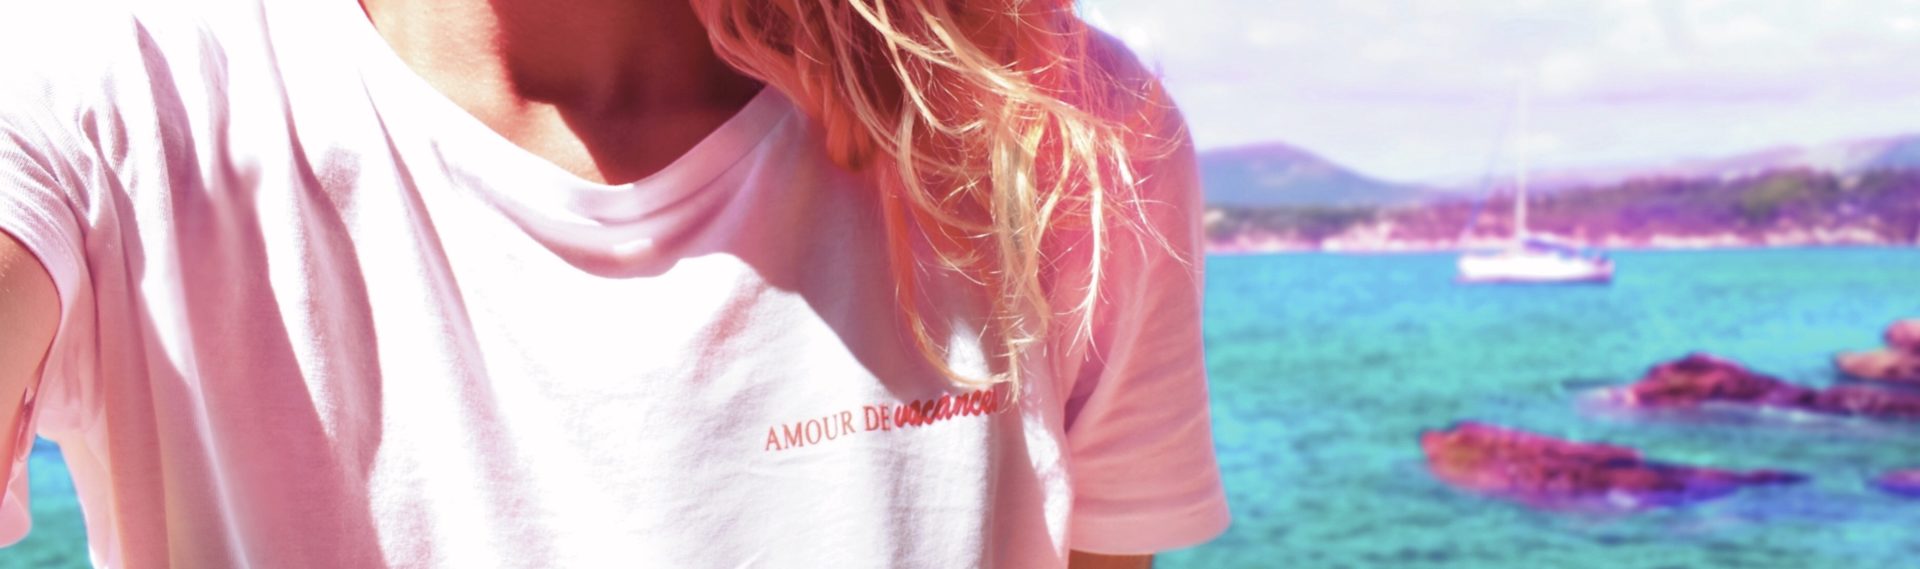 portrait discret en tee-shirt blanc, écriture rouge "amour de vacances" sur la poitrine, cheveux blonds ondulants au vent, dans un décor marin ensoleillée, mer turquoise